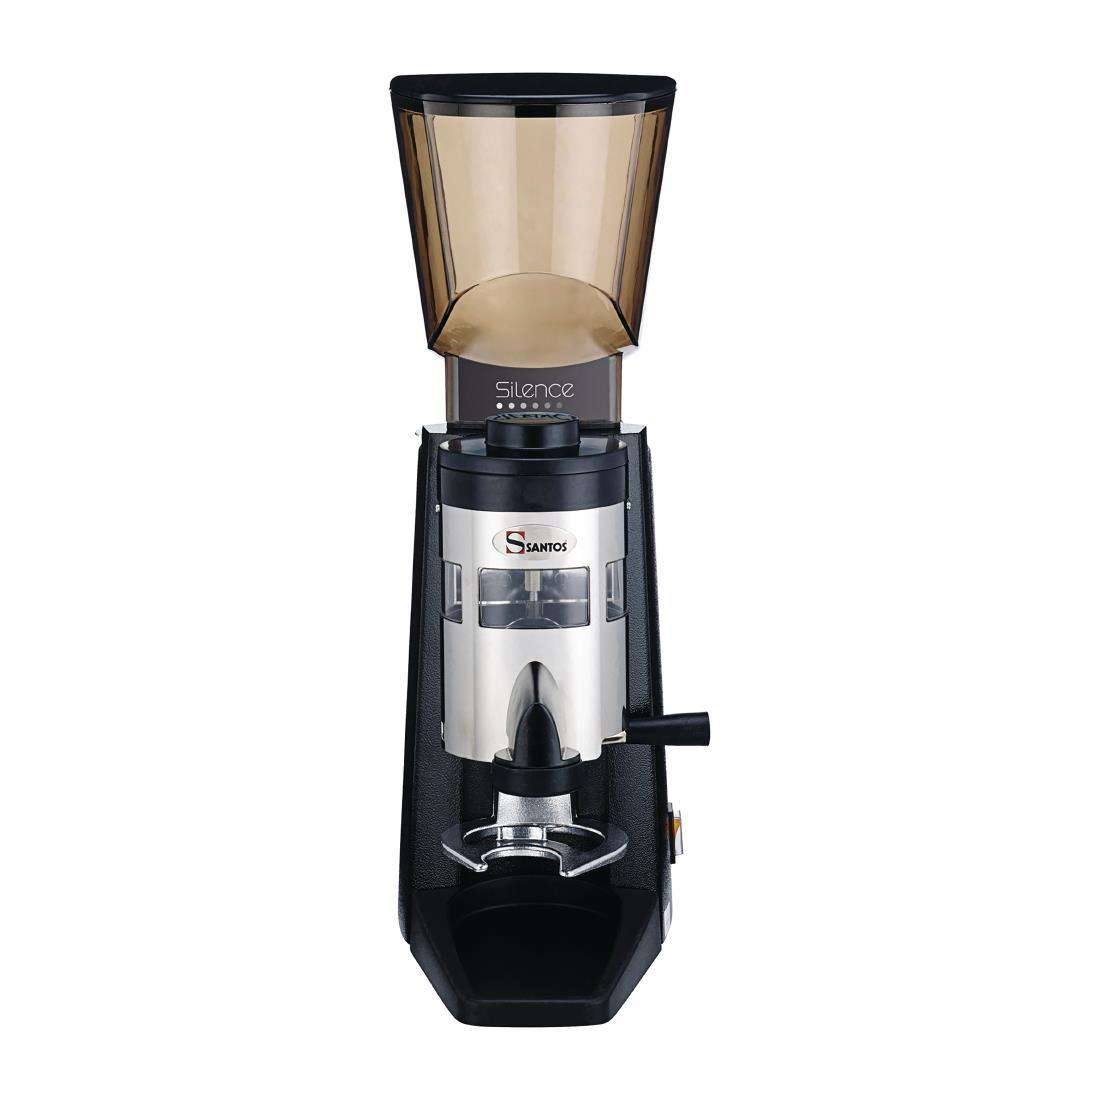 Santos Silent Espresso Coffee Grinder with Dispenser 40 - CK819  - 2